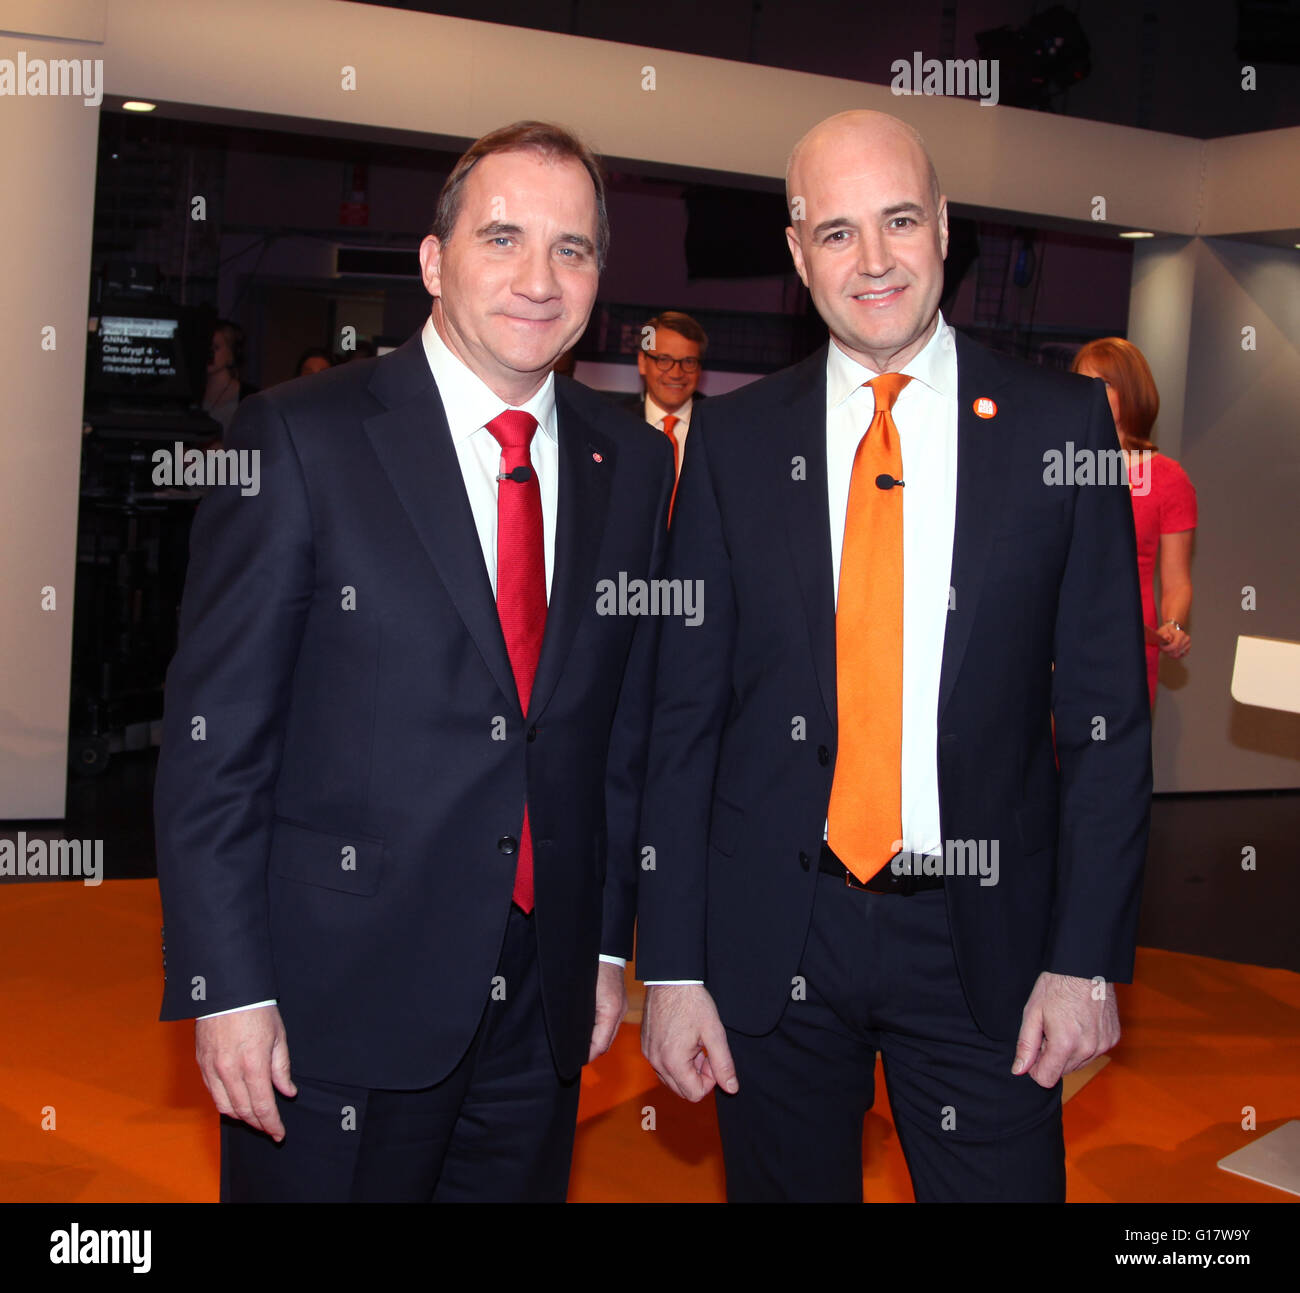 STEFAN LÖFVÉN,Trabajo y Fredrik Reinfeldt ,conservadores campaigne antes de las elecciones Foto de stock